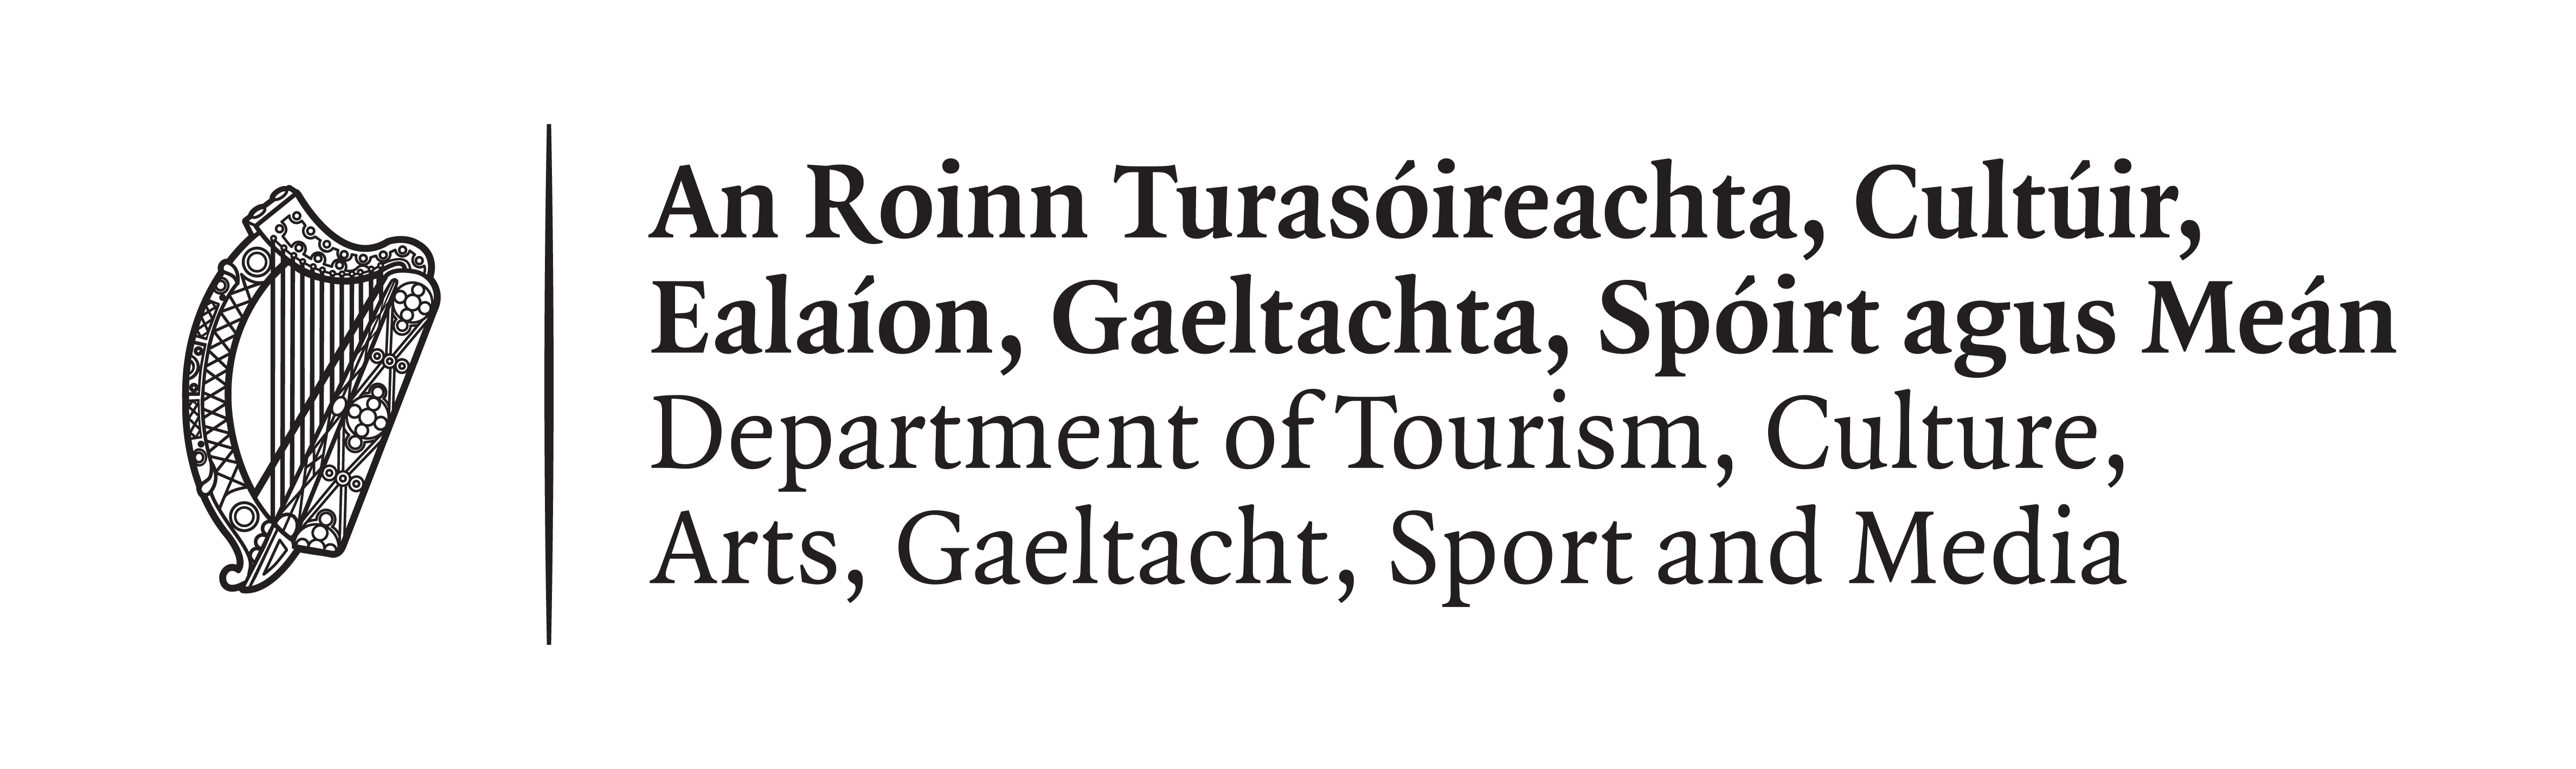 An Roinn Turasóireacht, Cultúir, Ealaíon, Gaeltachta, Spóirt agus Meán Logo